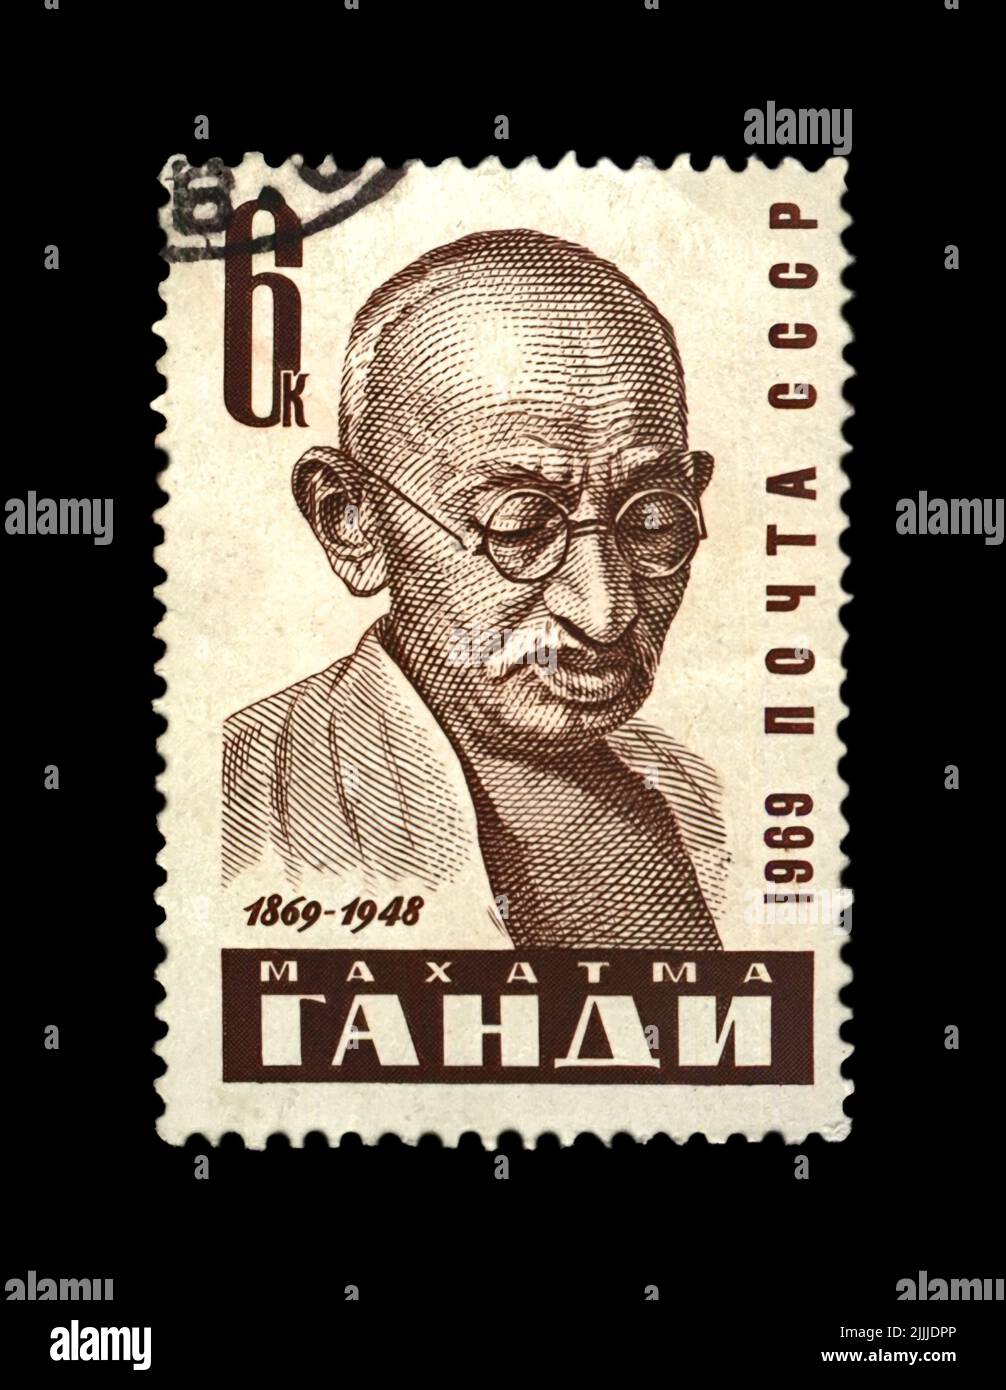 Mahatma Gandhi (1869-1948) alias Mohandas Karamchand Gandhi, famoso activista indio, canceló el sello impreso en la URSS Foto de stock